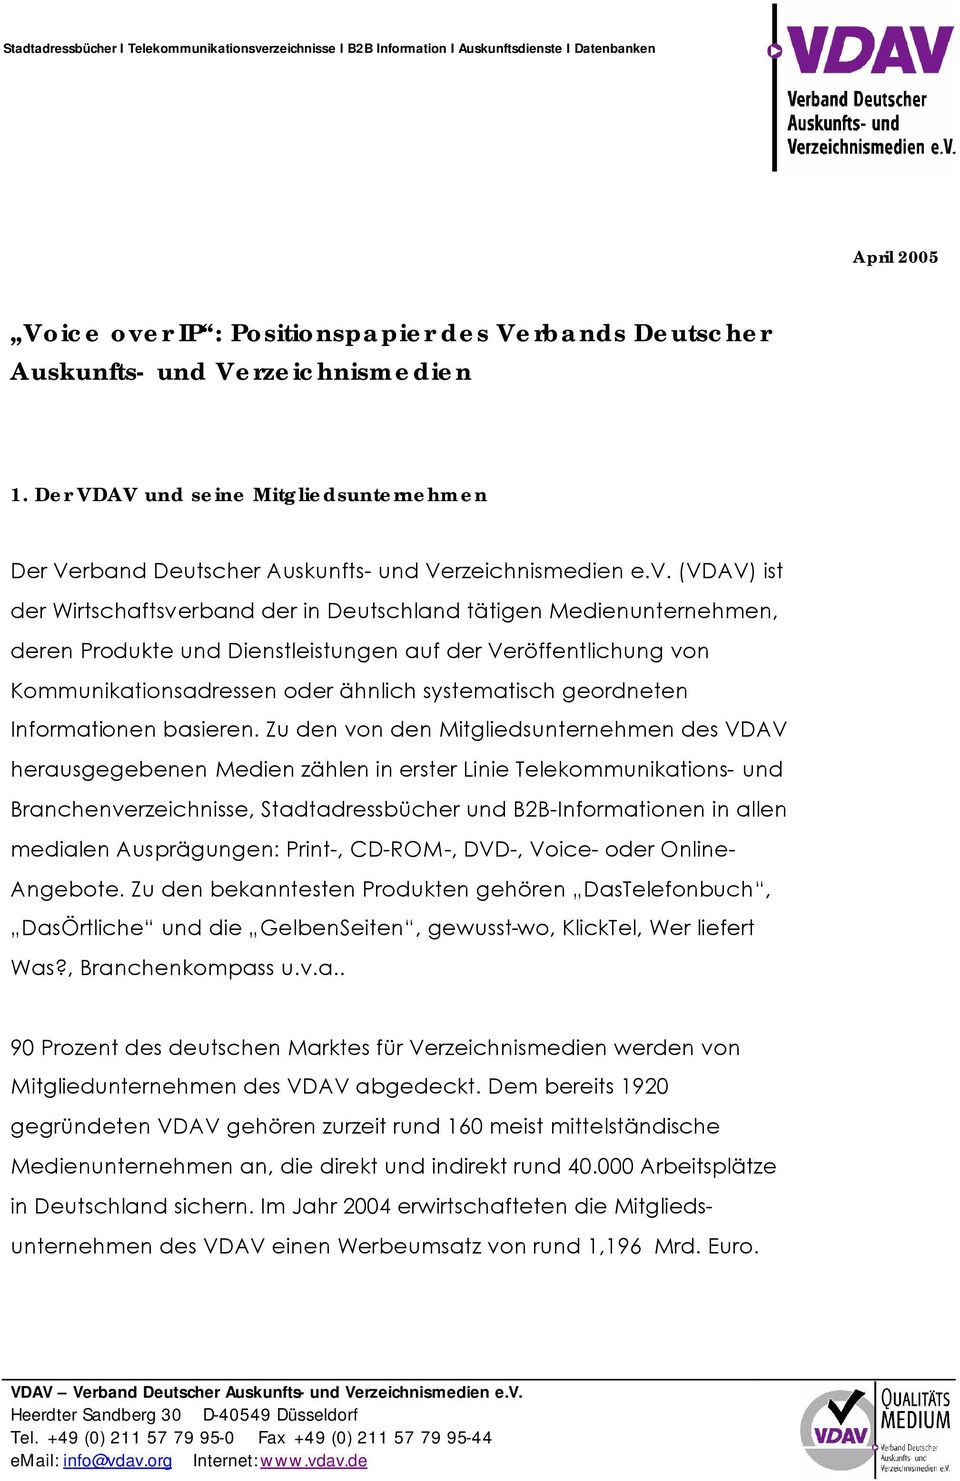 (VDAV) ist der Wirtschaftsverband der in Deutschland tätigen Medienunternehmen, deren Produkte und Dienstleistungen auf der Veröffentlichung von Kommunikationsadressen oder ähnlich systematisch